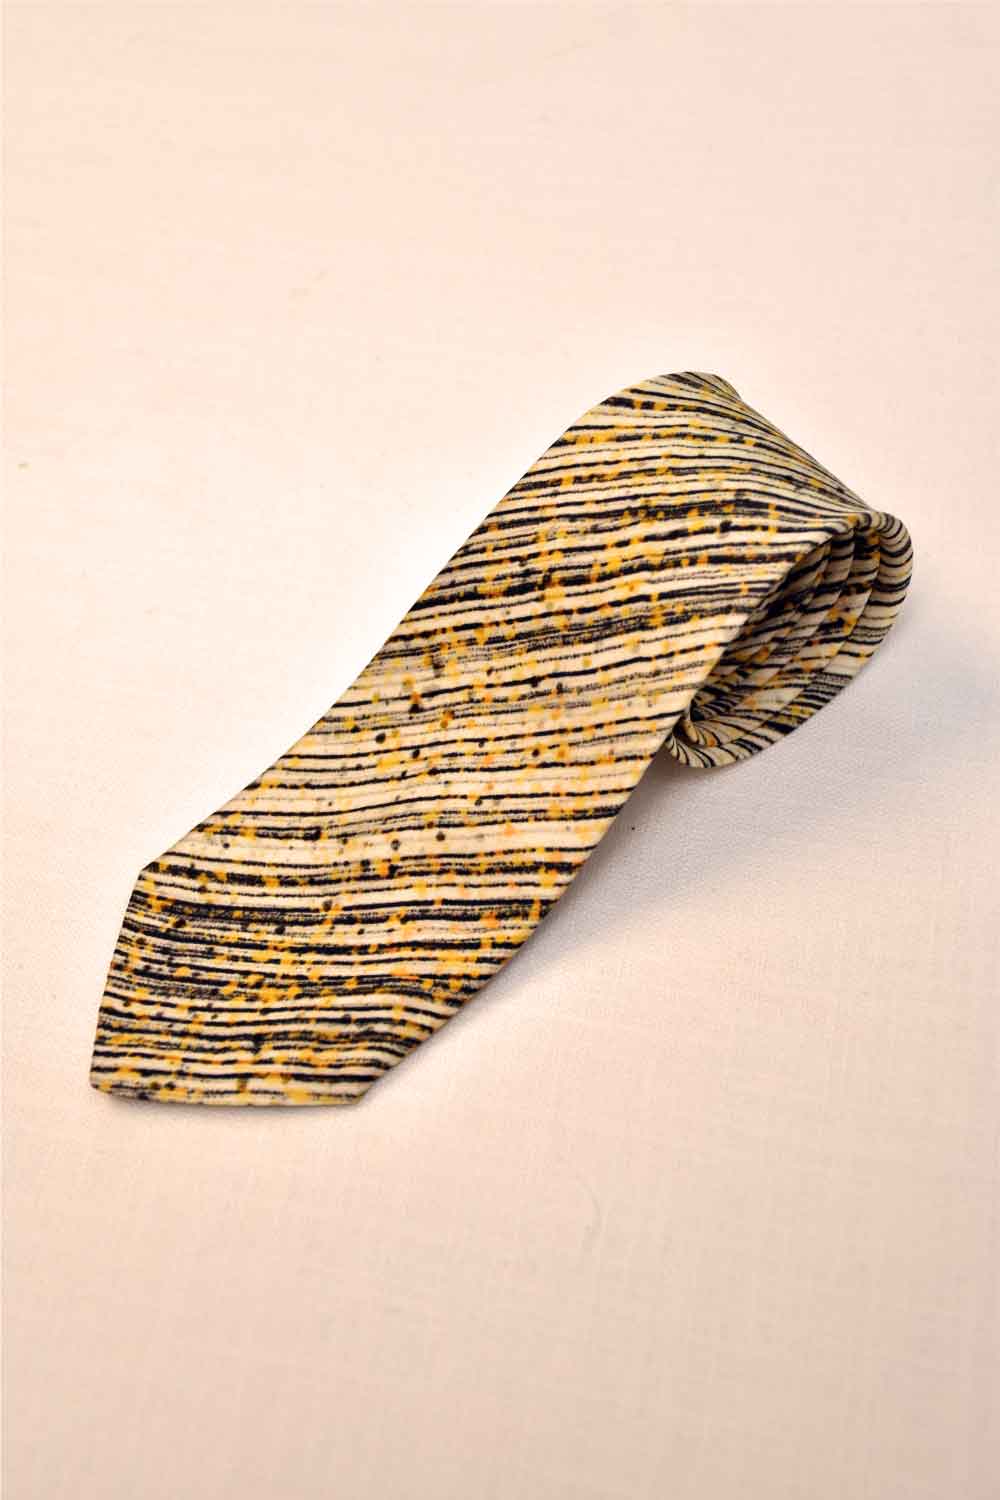 Kahlua Stripe Tie - Ted Ferde